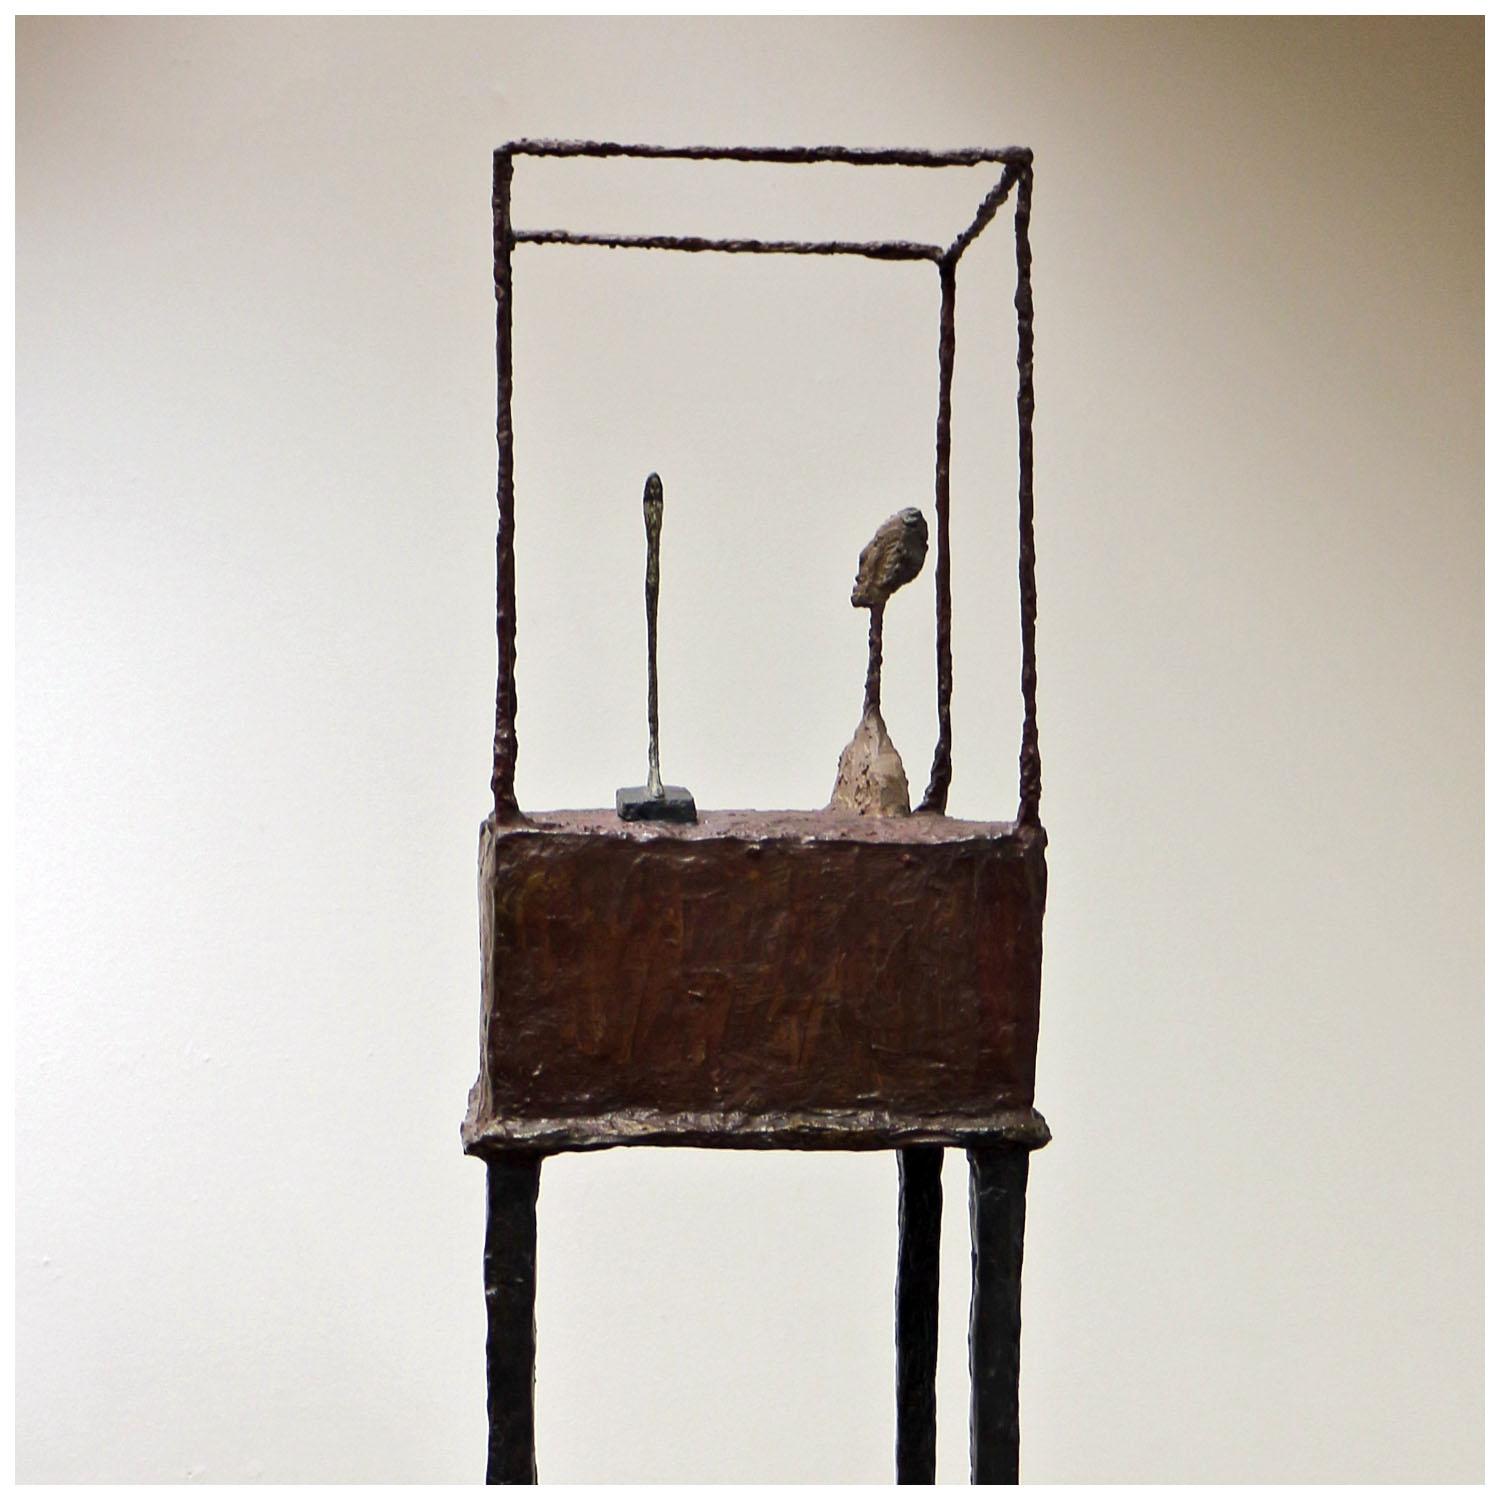 Alberto Giacometti. The Cage. 1949. Albertina Wien